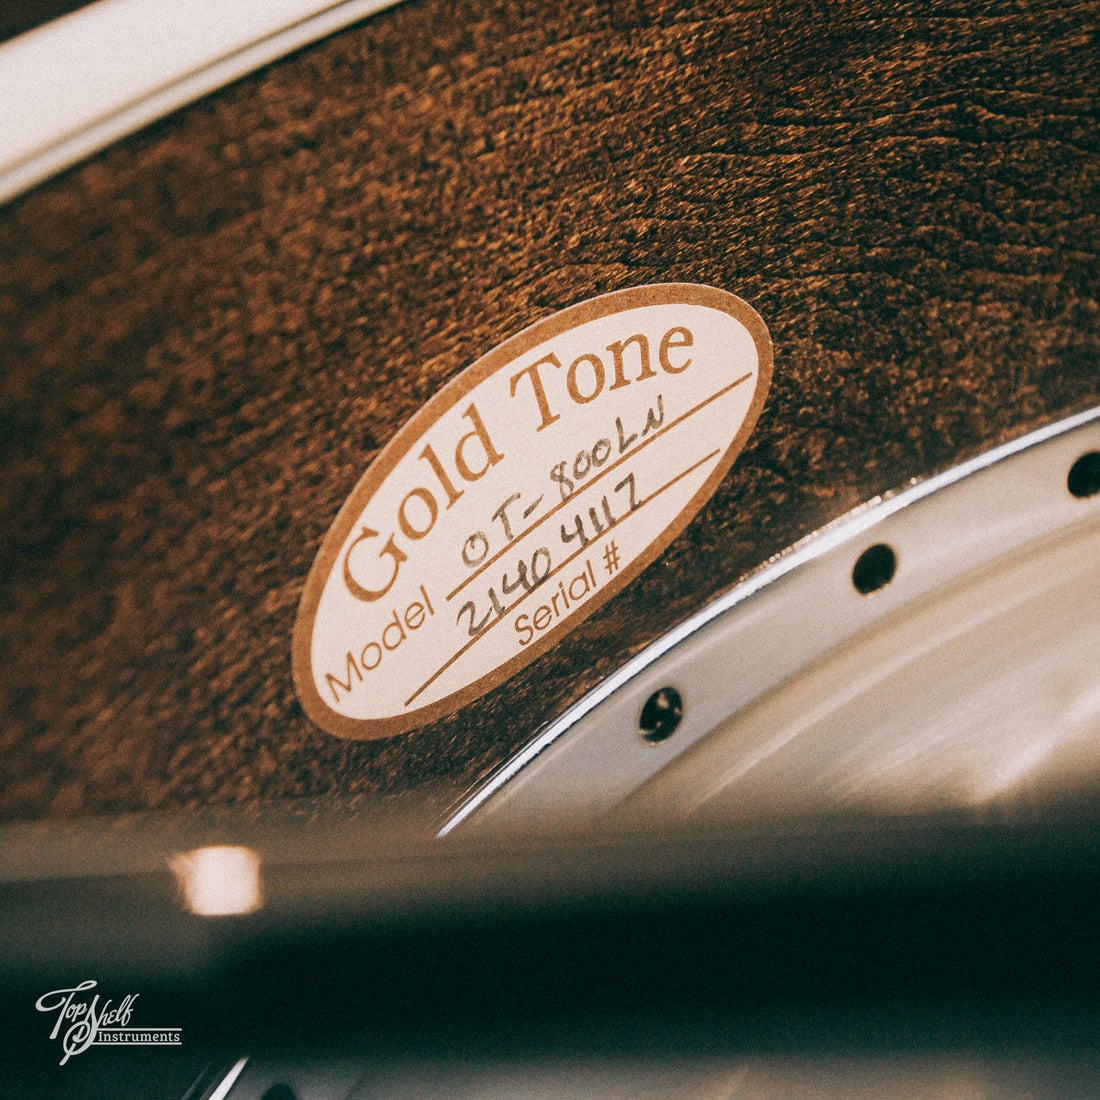 Gold Tone OT-800LN Old Time Long Neck Banjo 2021